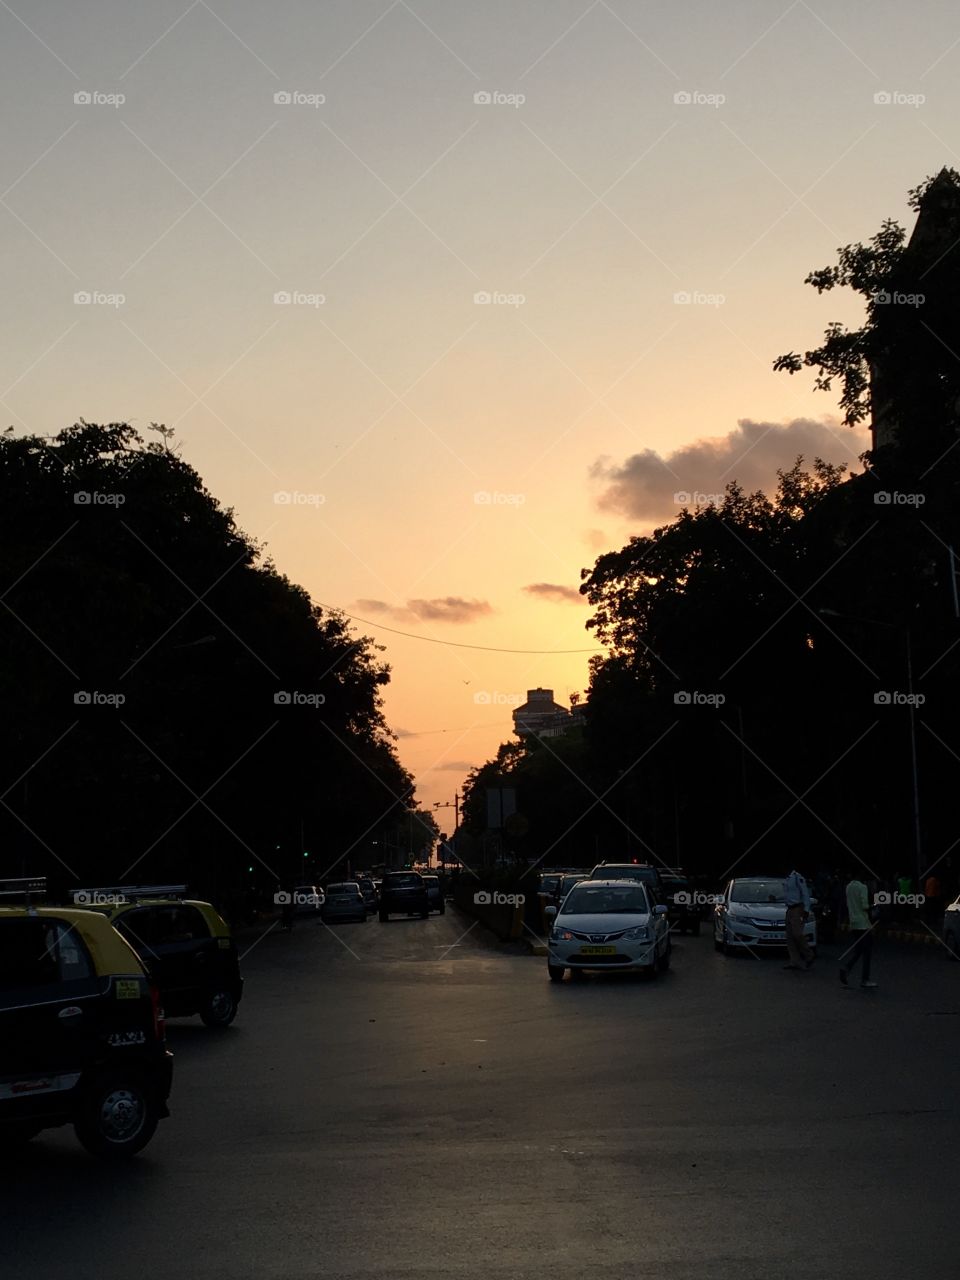 #Sunsets #City #India #Mumbai 
